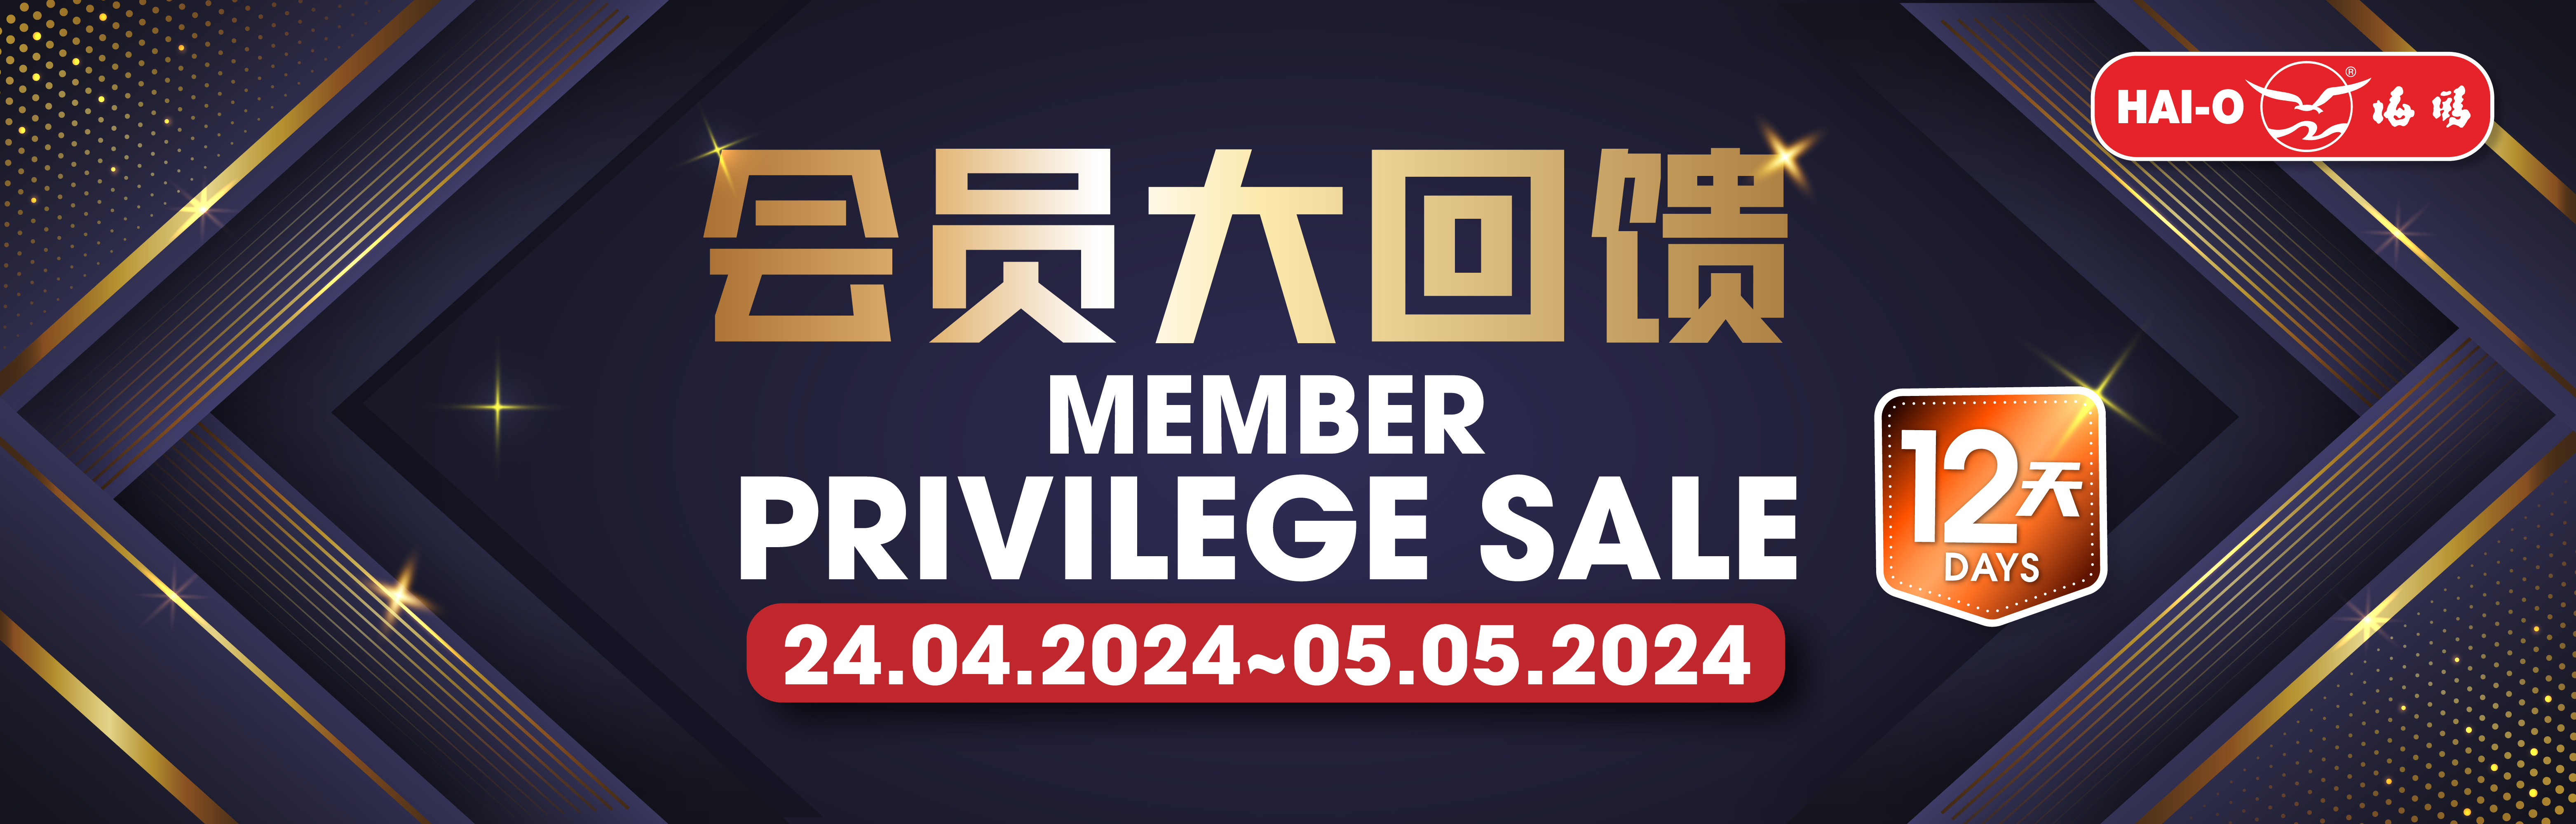 Member Privilege Sale @ April 2024